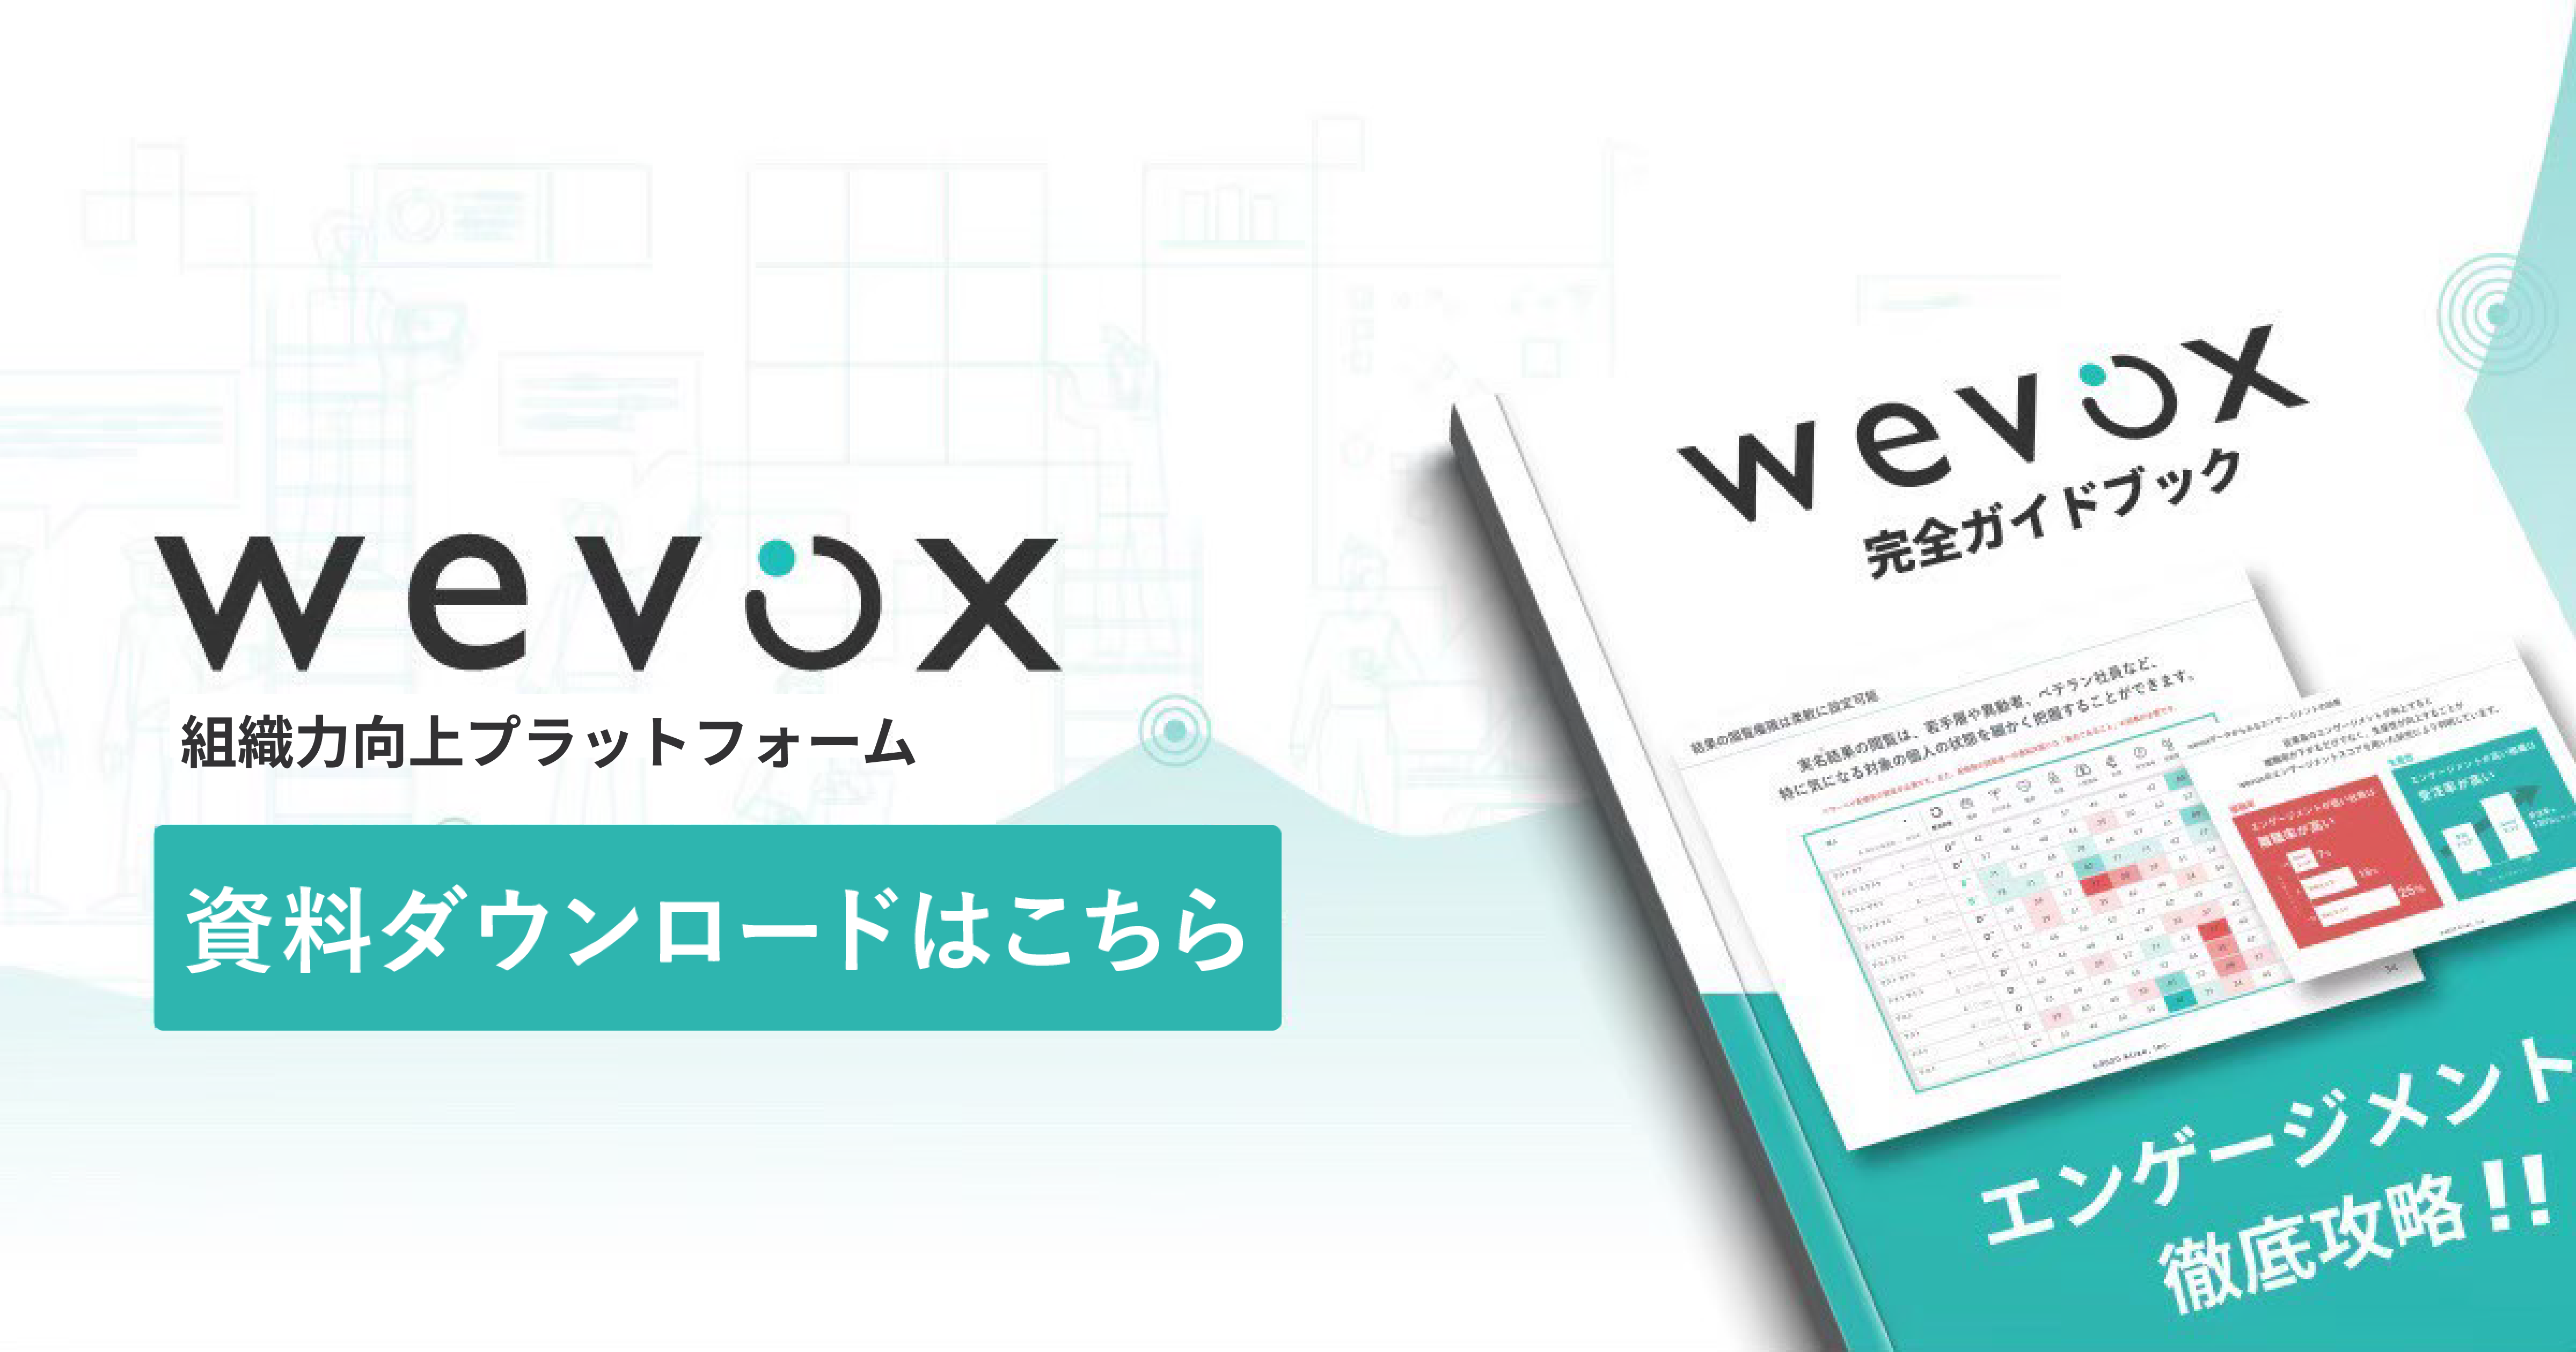 Wevox 資料ダウンロードはこちら